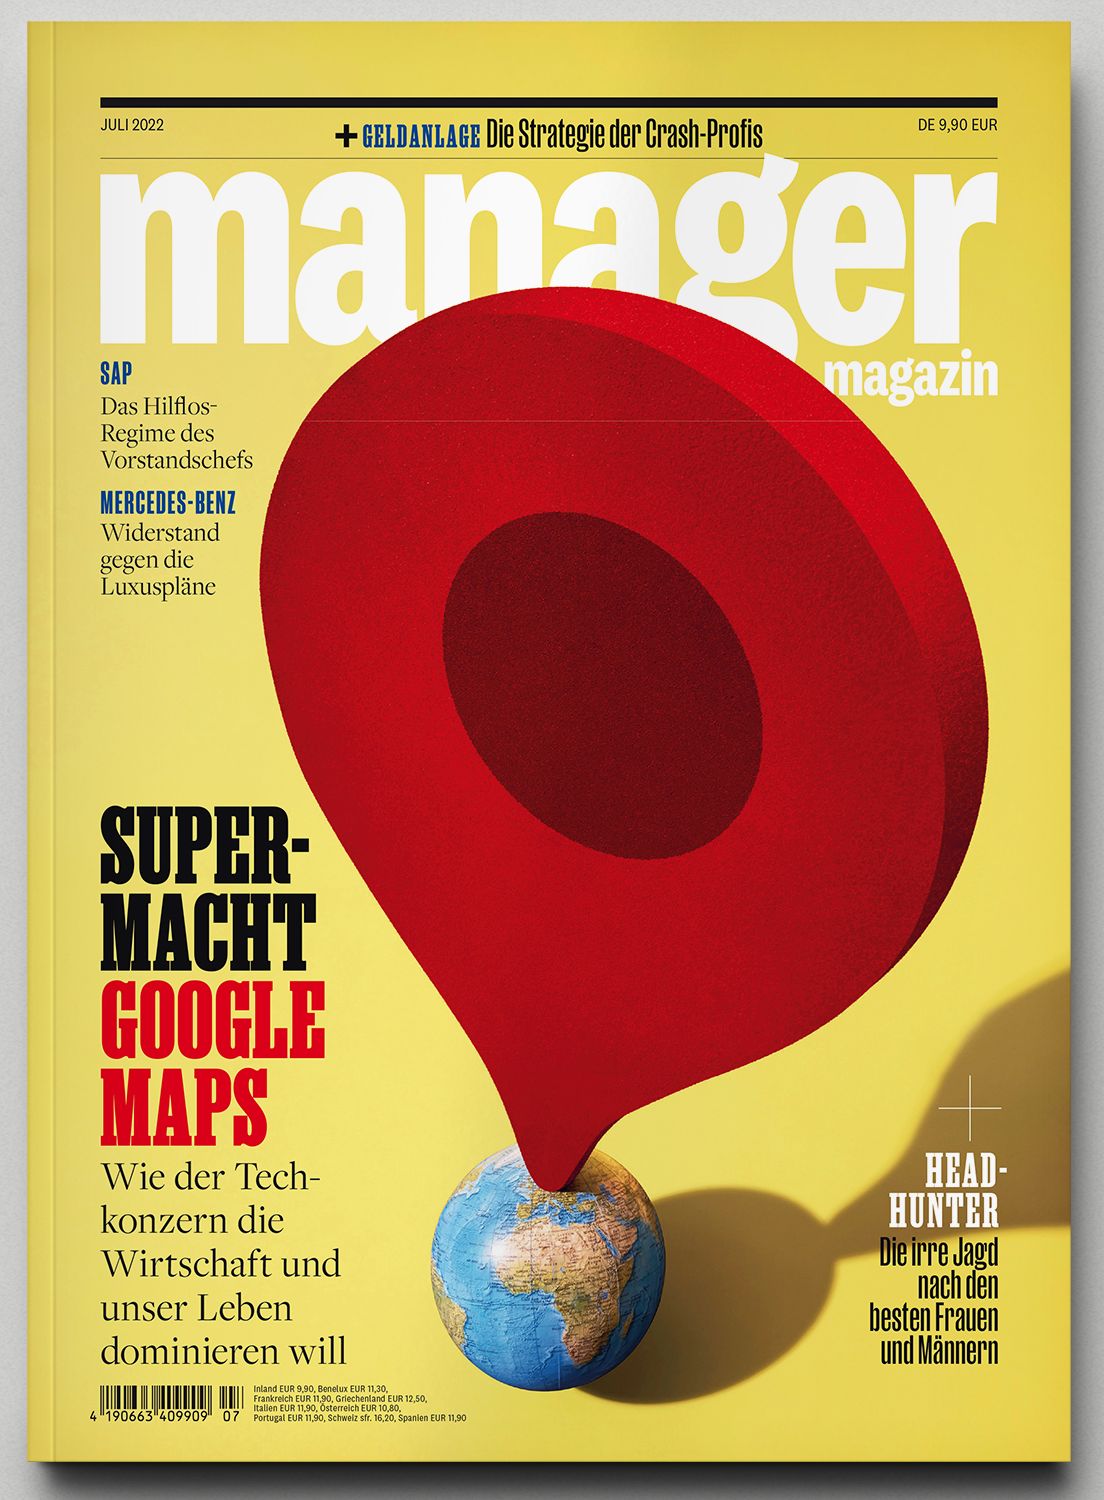 Foto: Das "Manager Magazin" kommt im neuen Look